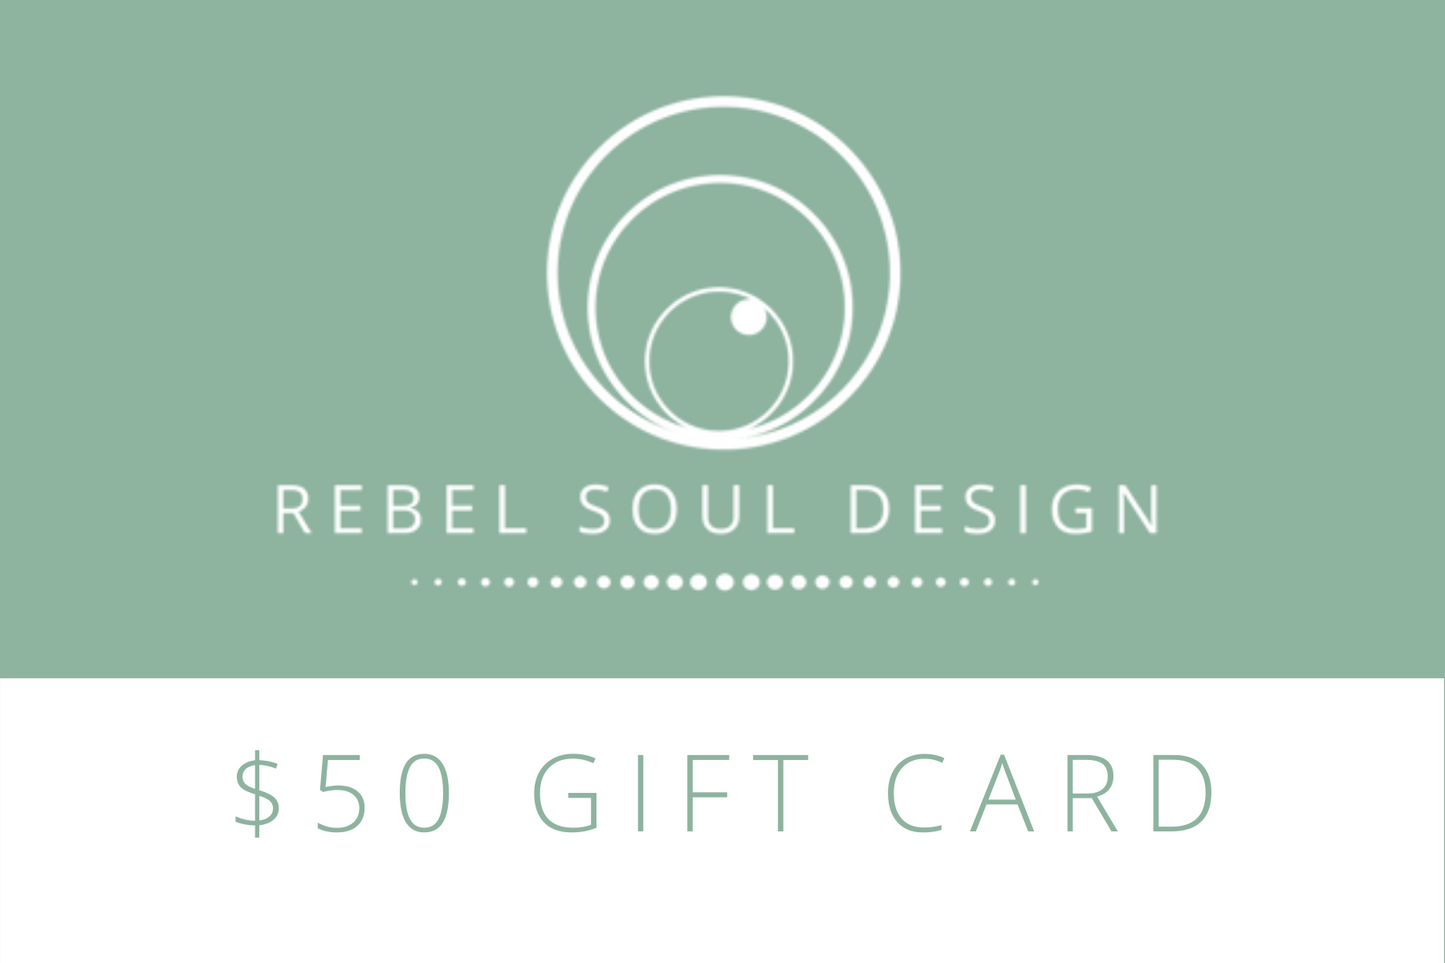 Rebel Soul Design Gift Card